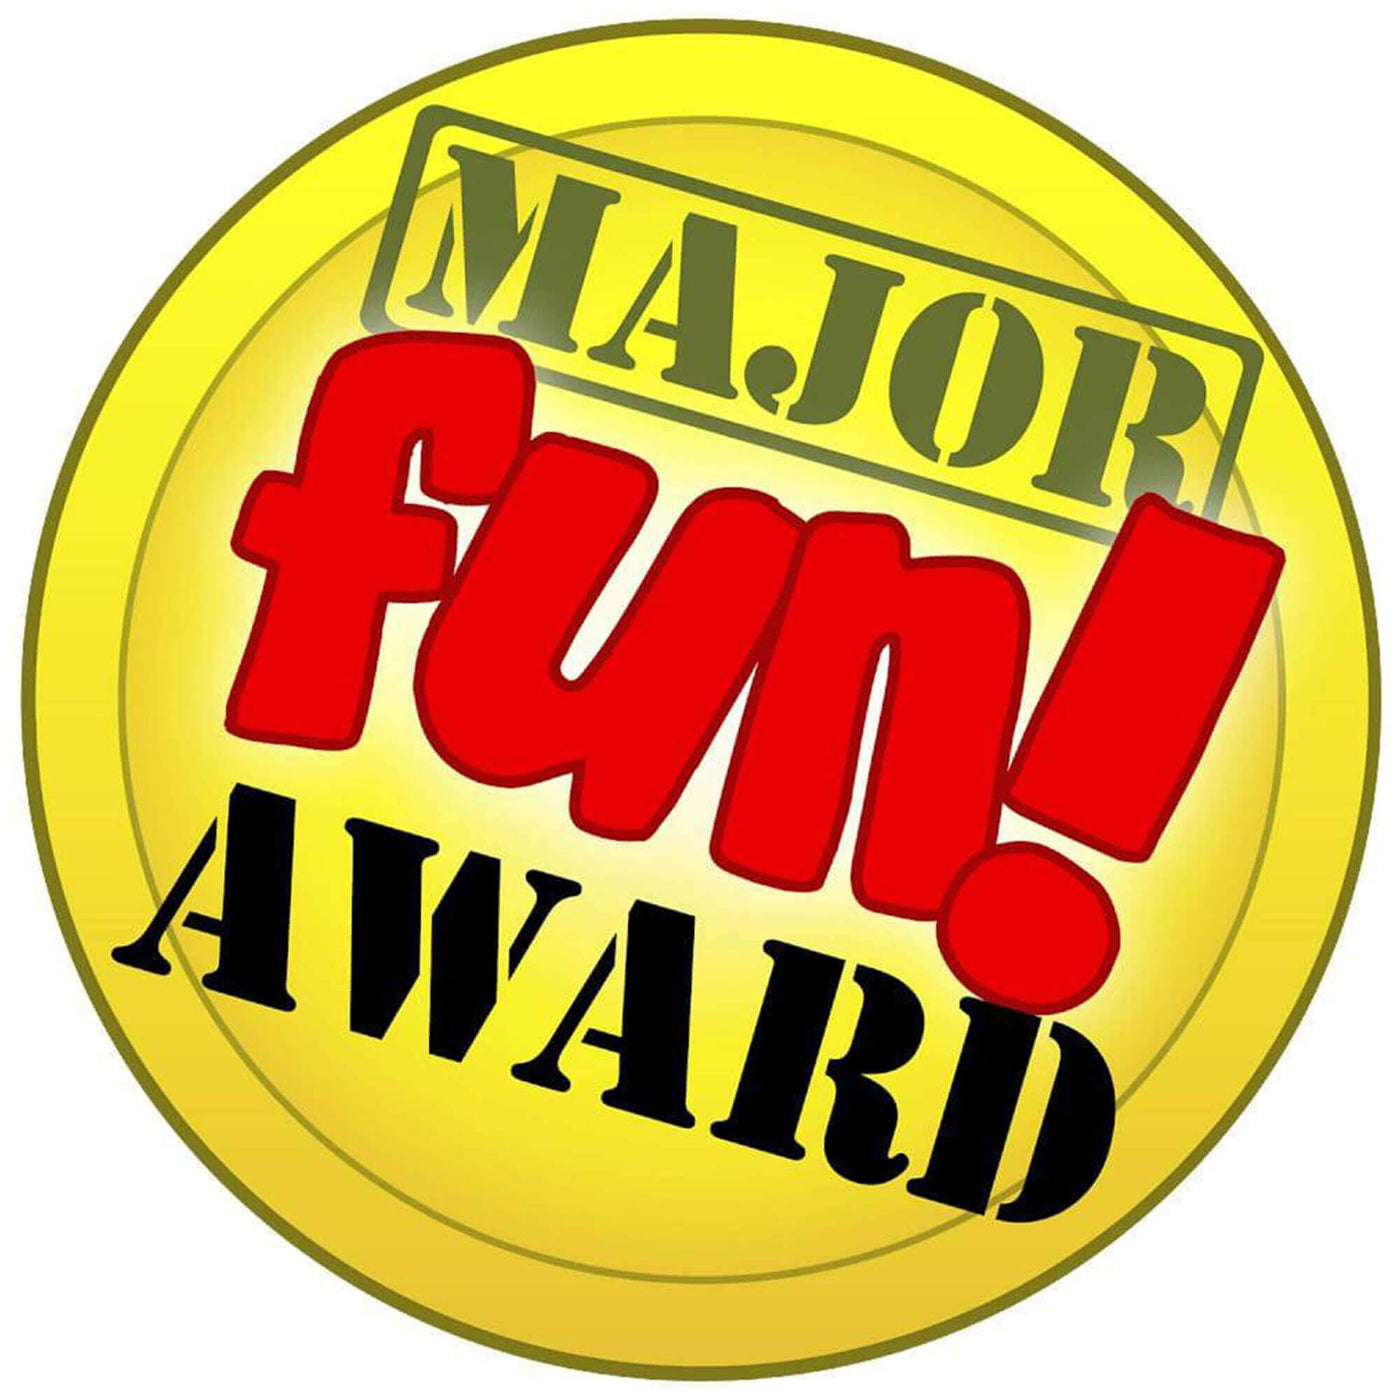 Major Fun Award!